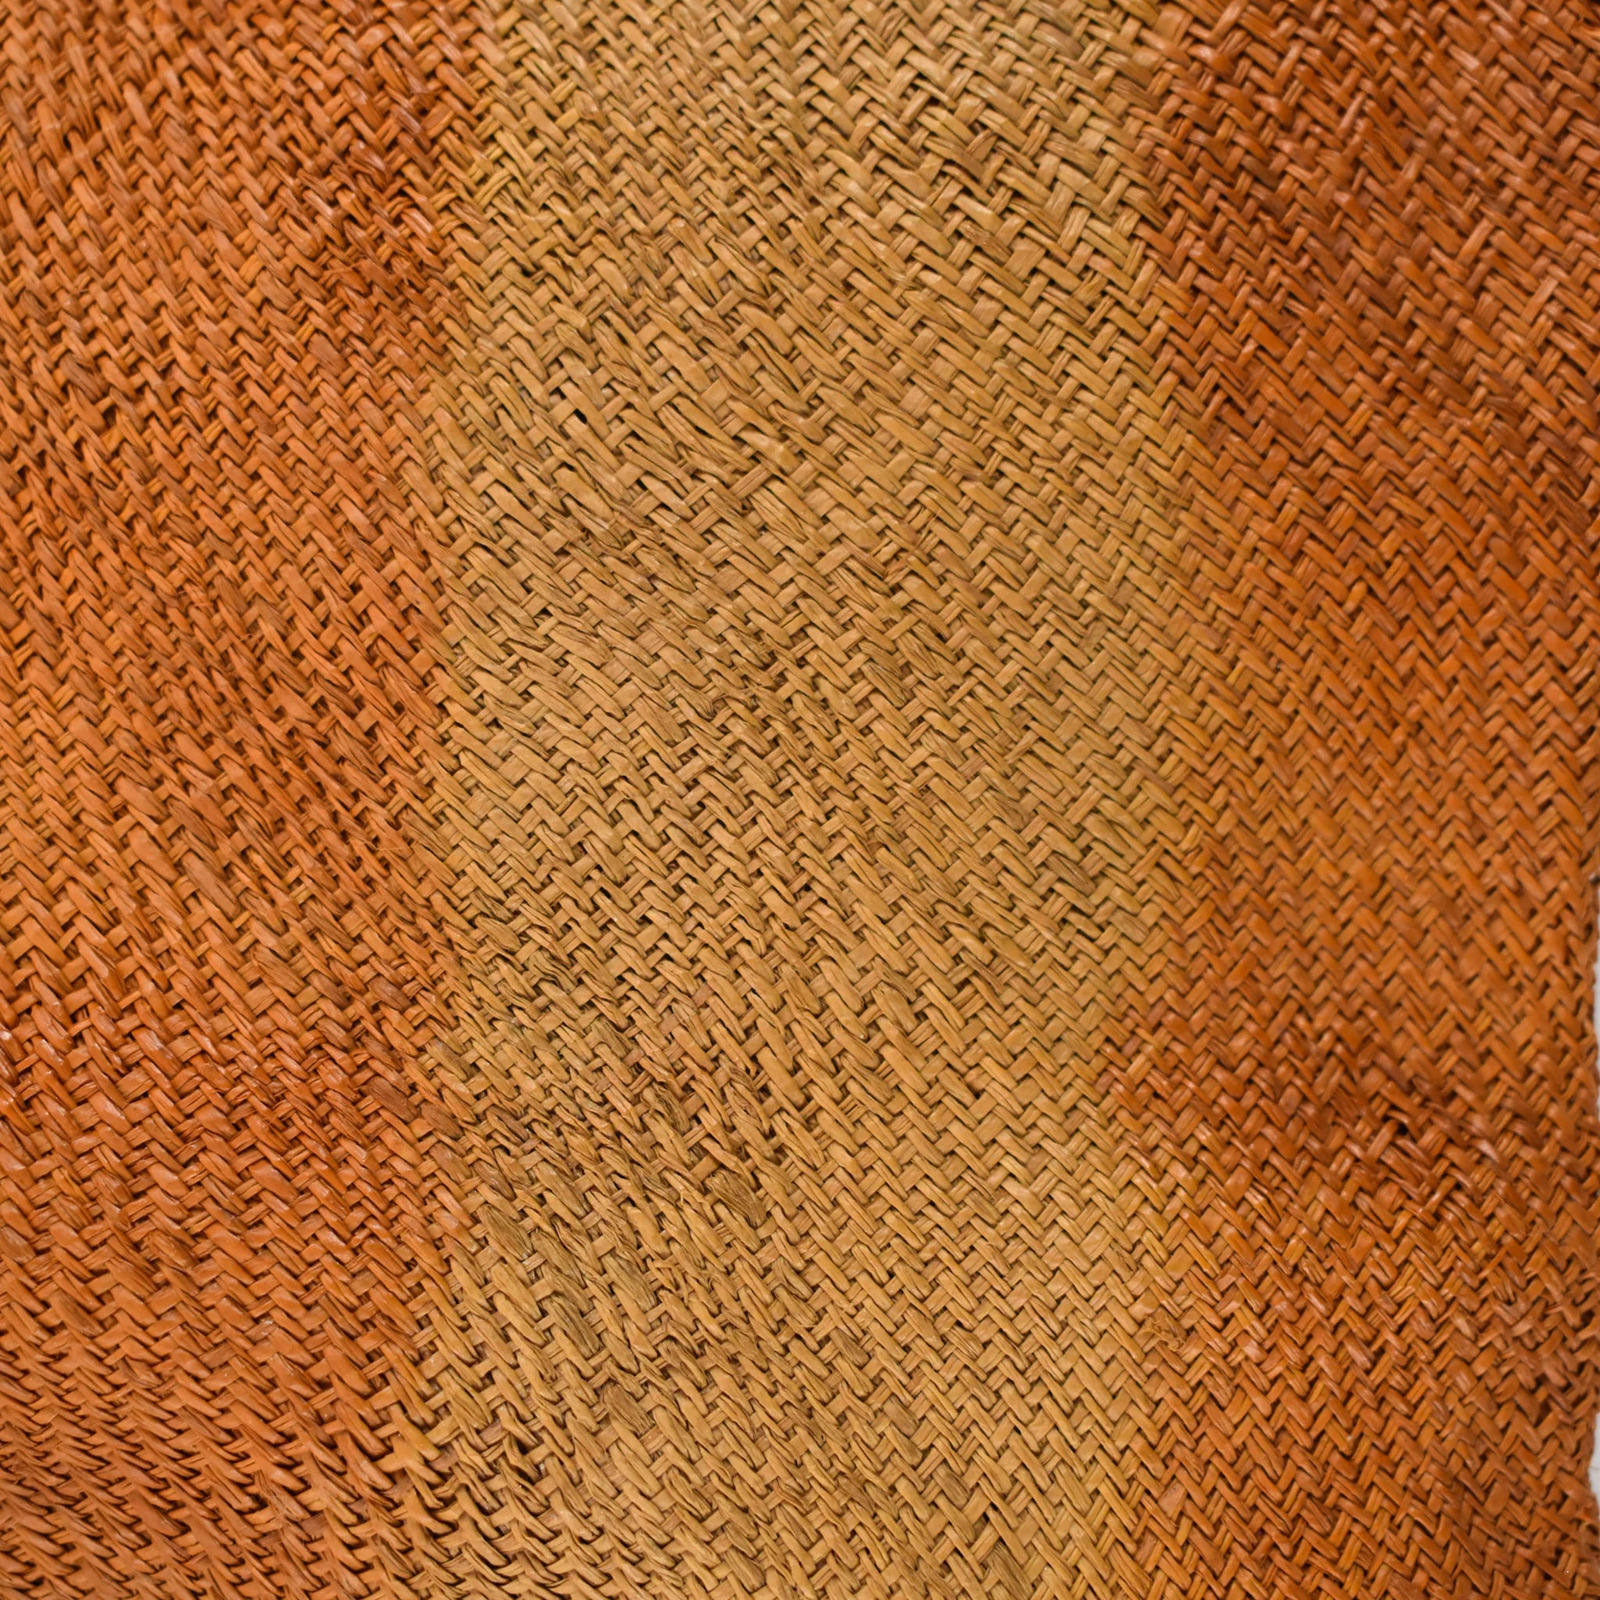 Dida Ceremonial Raffia Tie-Dye Textile Côte d'Ivoire 14.5x12.5 inch